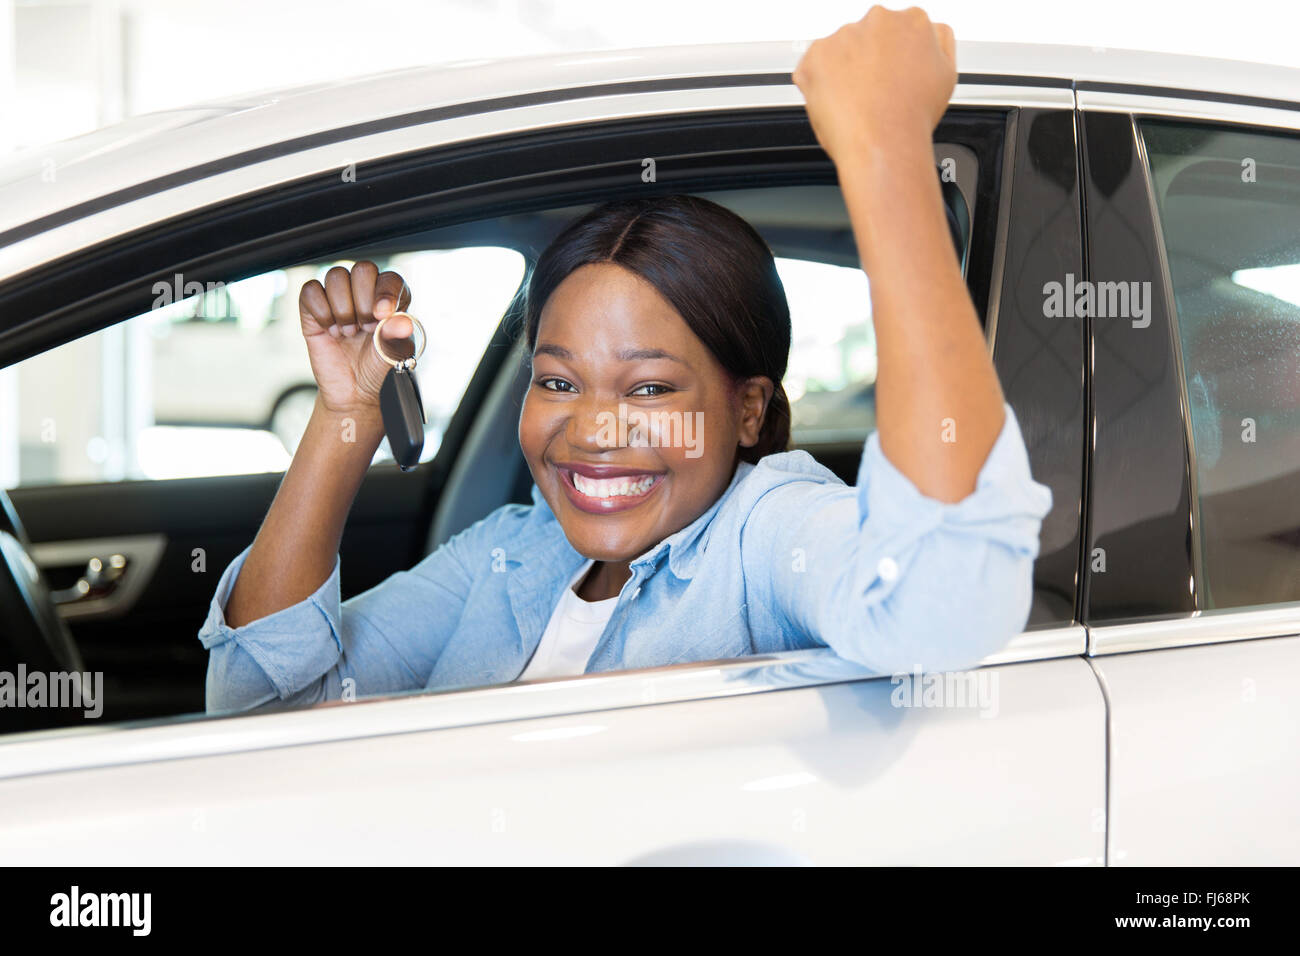 Allegro giovane donna africana che mostra la sua nuova chiave auto in concessionaria Foto Stock